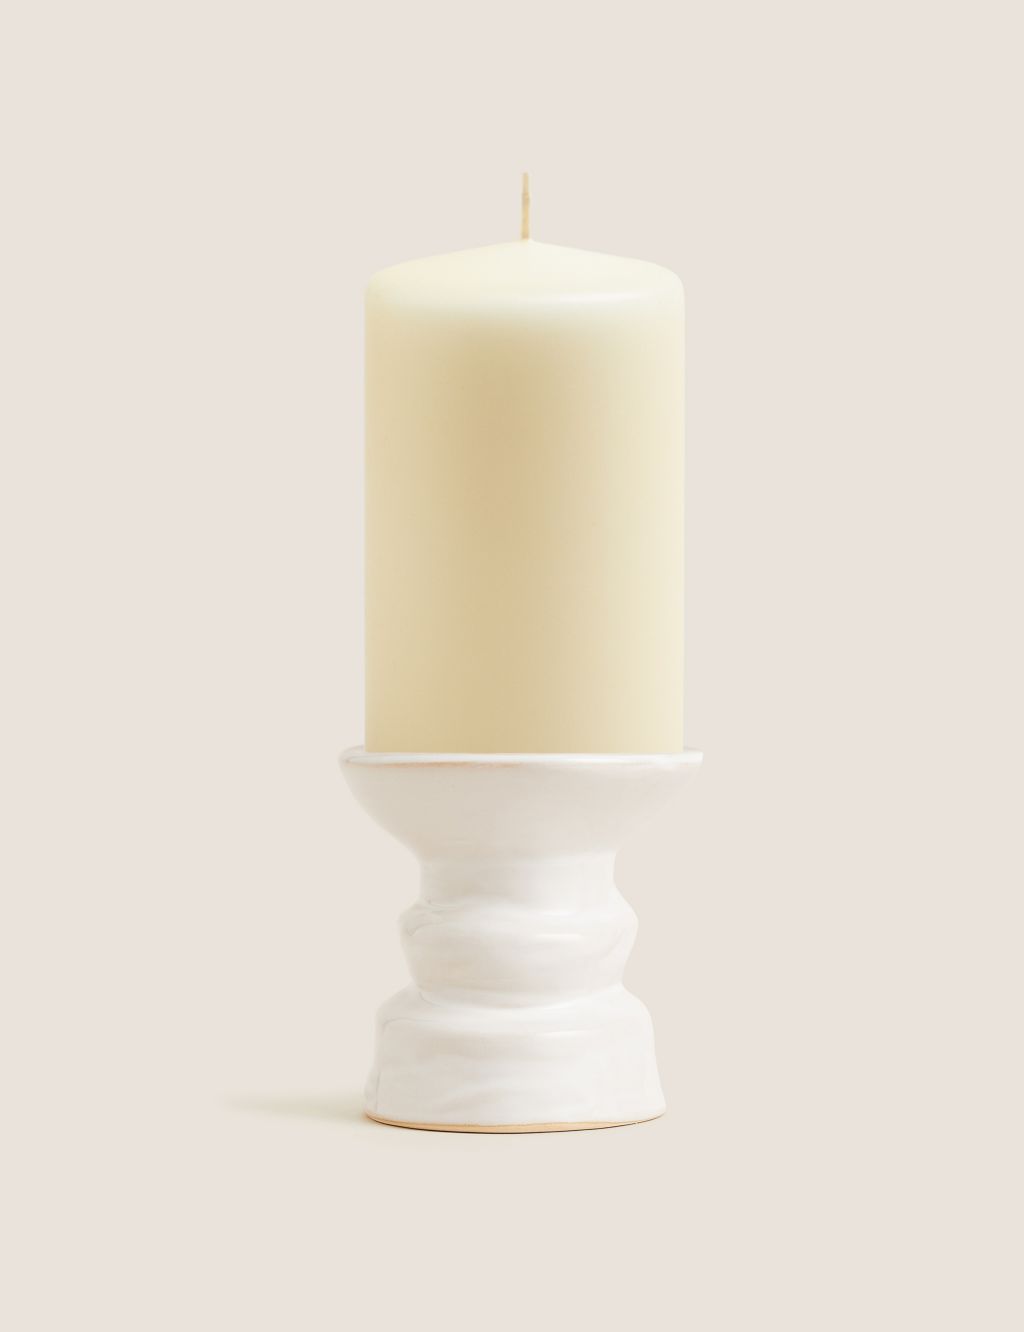 Medium Ceramic Pillar Candle Holder image 1